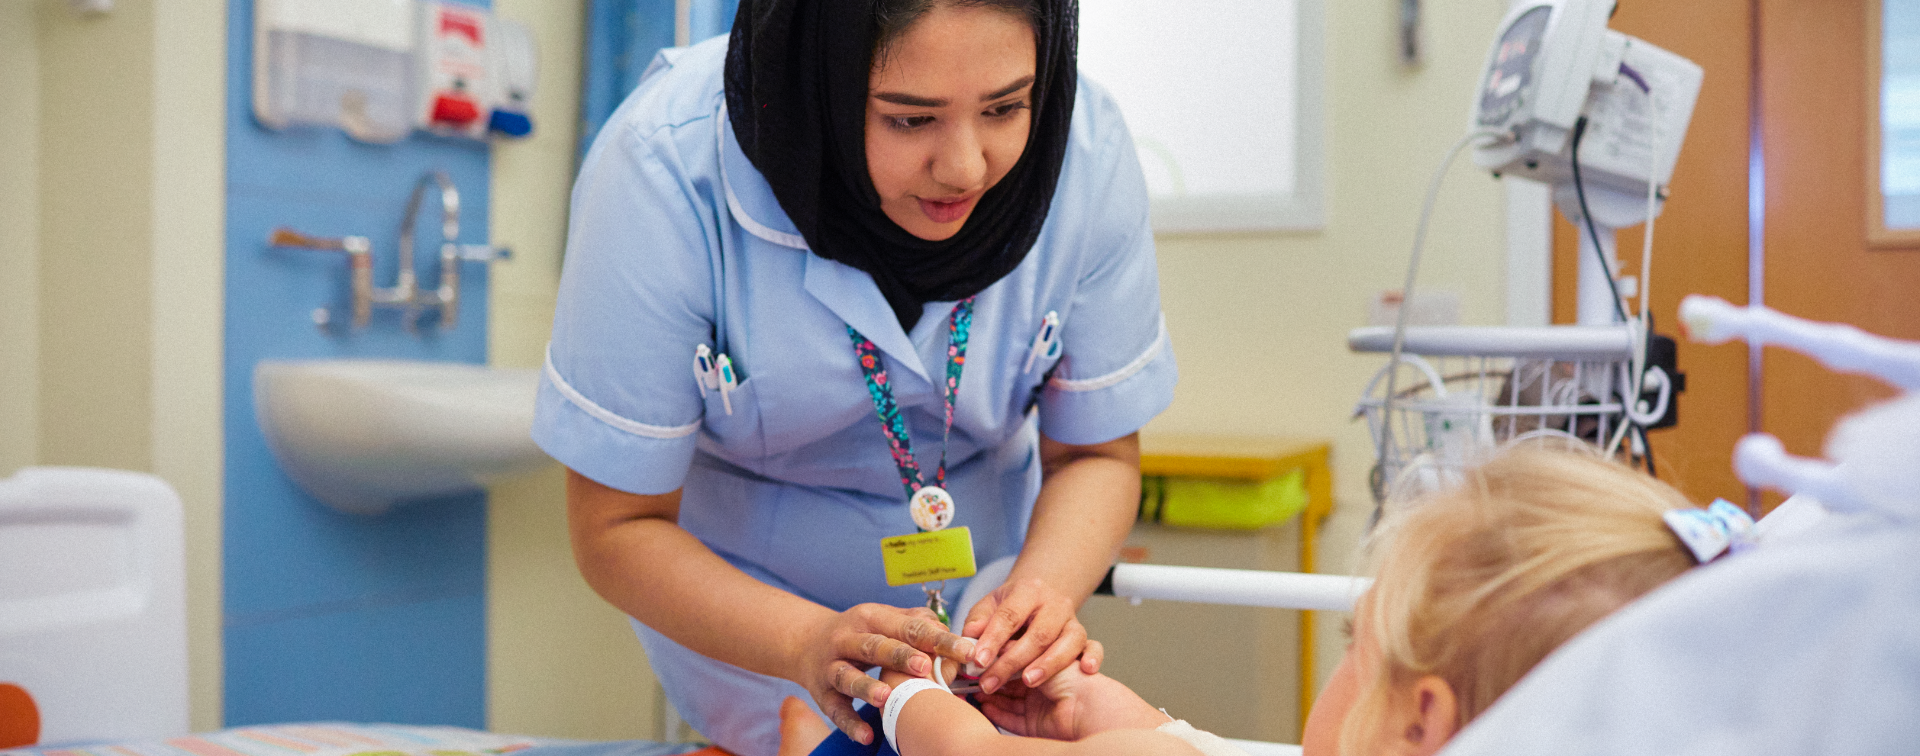 Roles in nursing | Health Careers